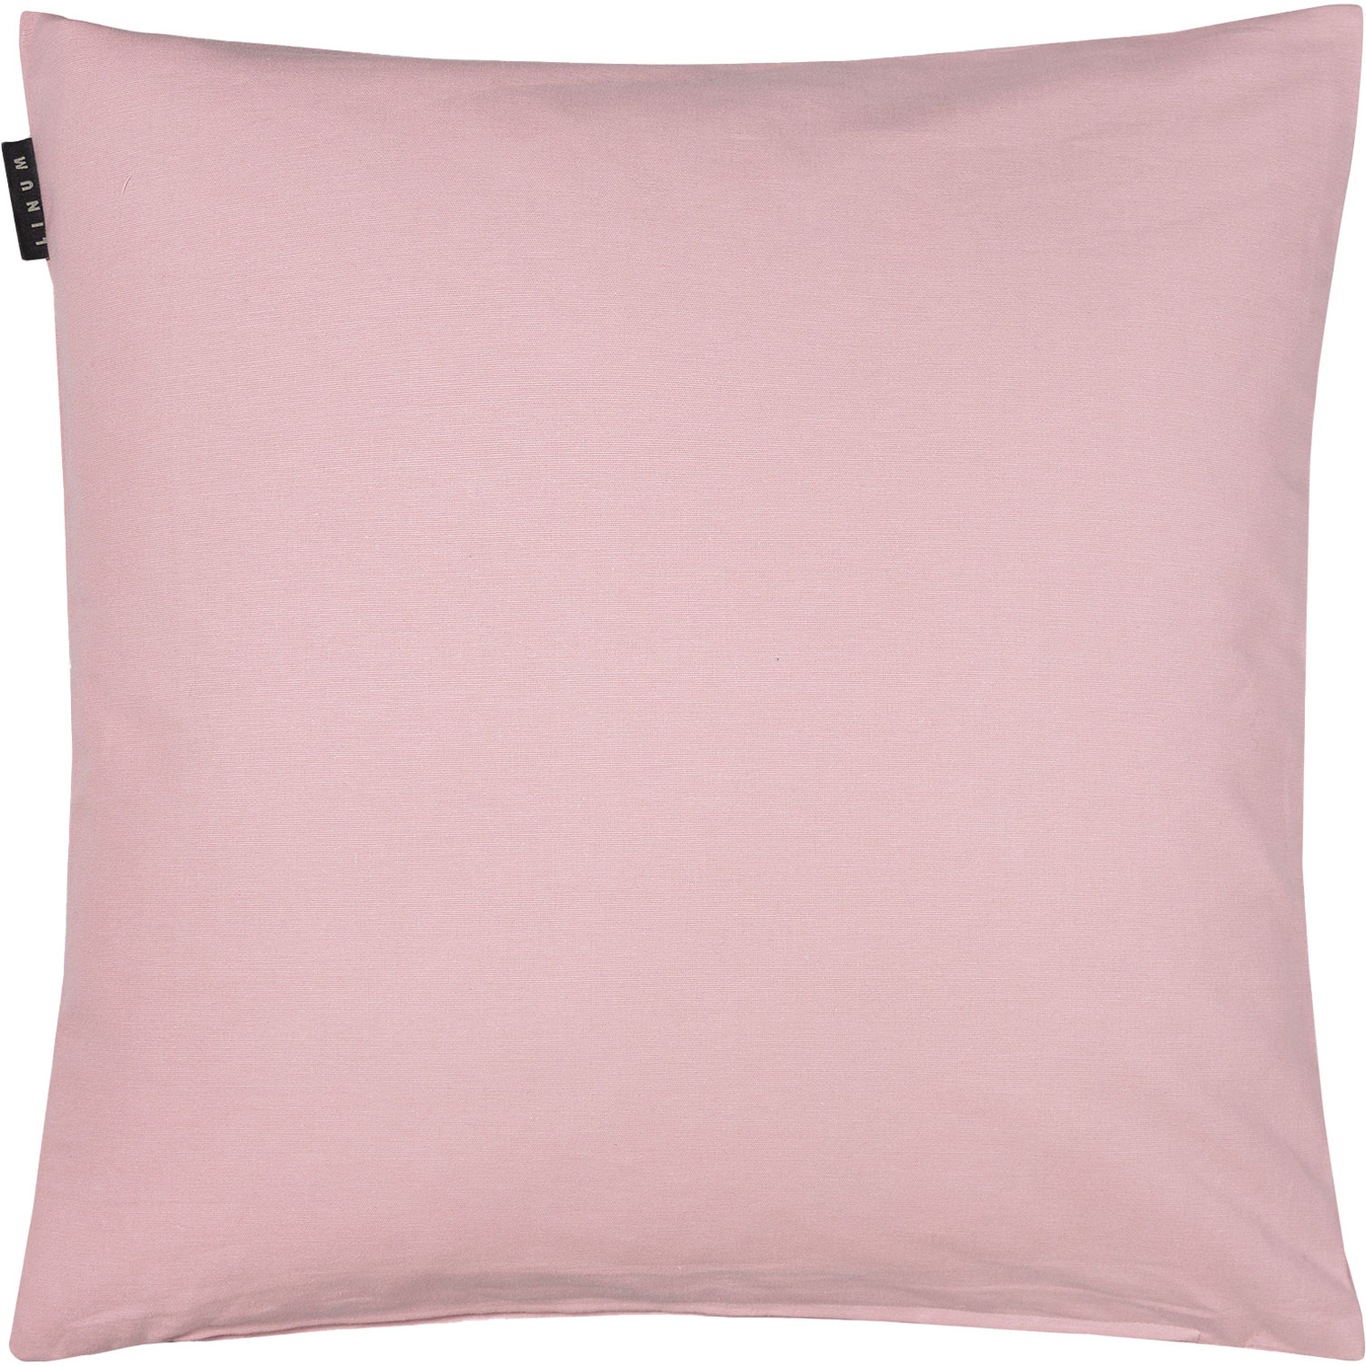 Annabell Tyynynpäällinen 50x50 cm, Dusty Pink